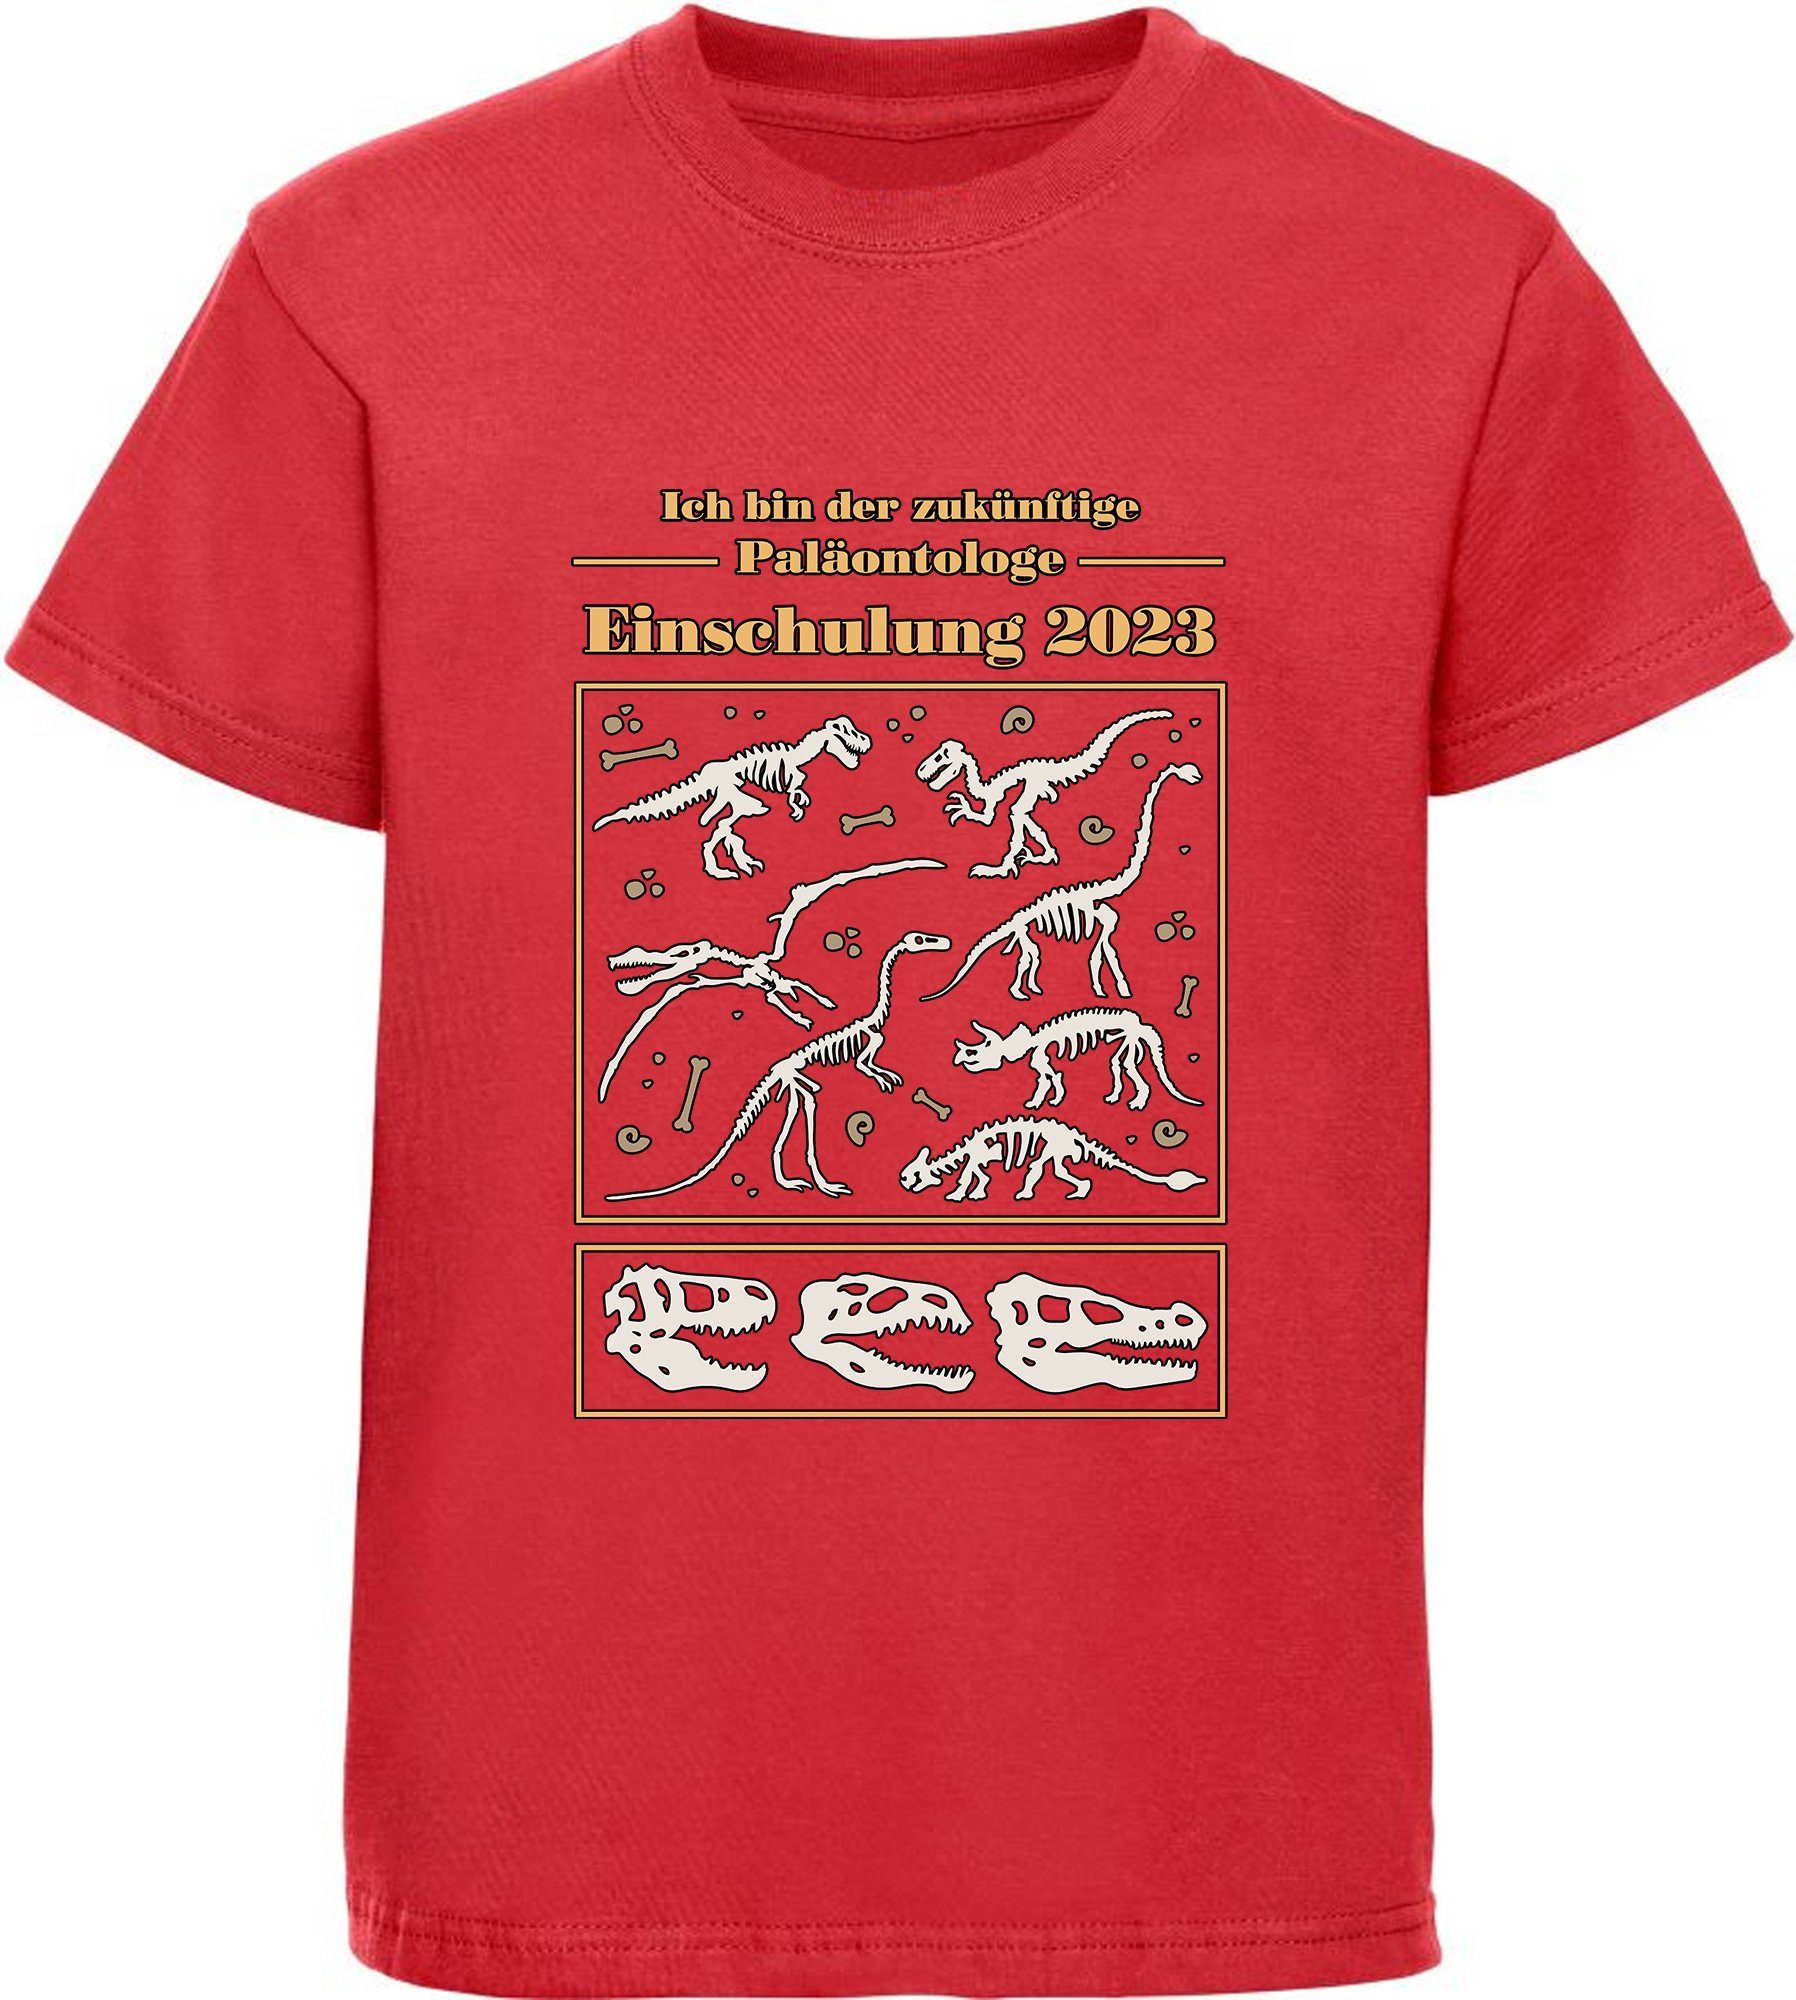 MyDesign24 Print-Shirt bedrucktes Kinder T-Shirt zukünftige Paläontologe mit Dino Skeletten Baumwollshirt Einschulung 2023, schwarz, weiß, rot, blau, i36